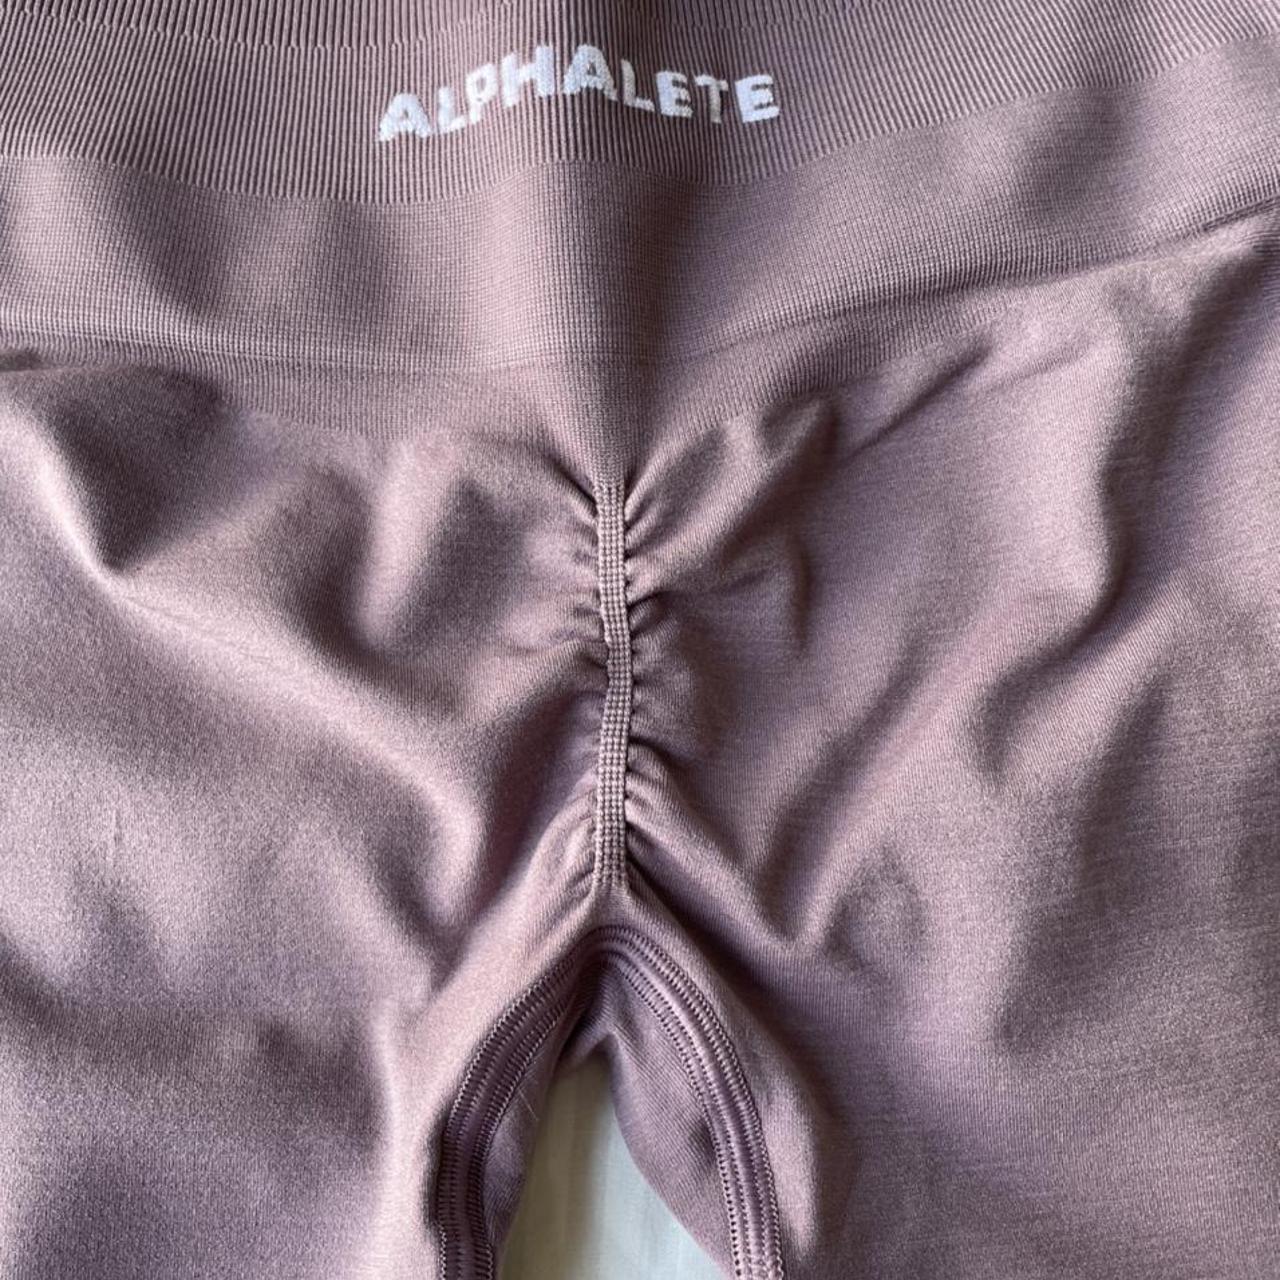 alphalete amplify leggings in passive purple size - Depop